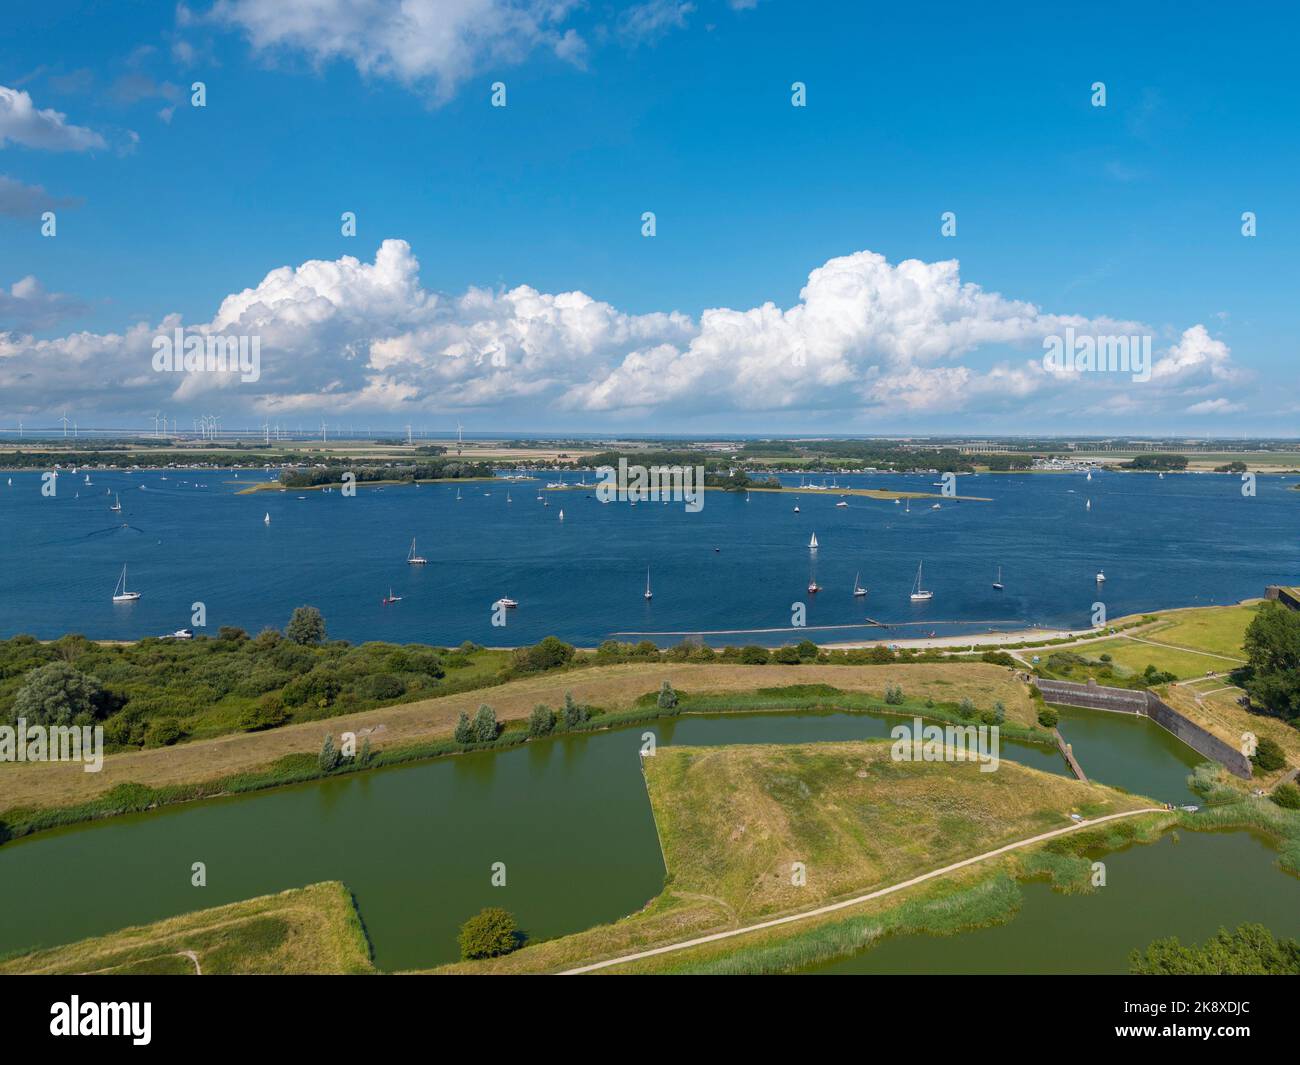 Aerial view with view over Veerse Meer, Veere, Zeeland, Netherlands, Europe Stock Photo